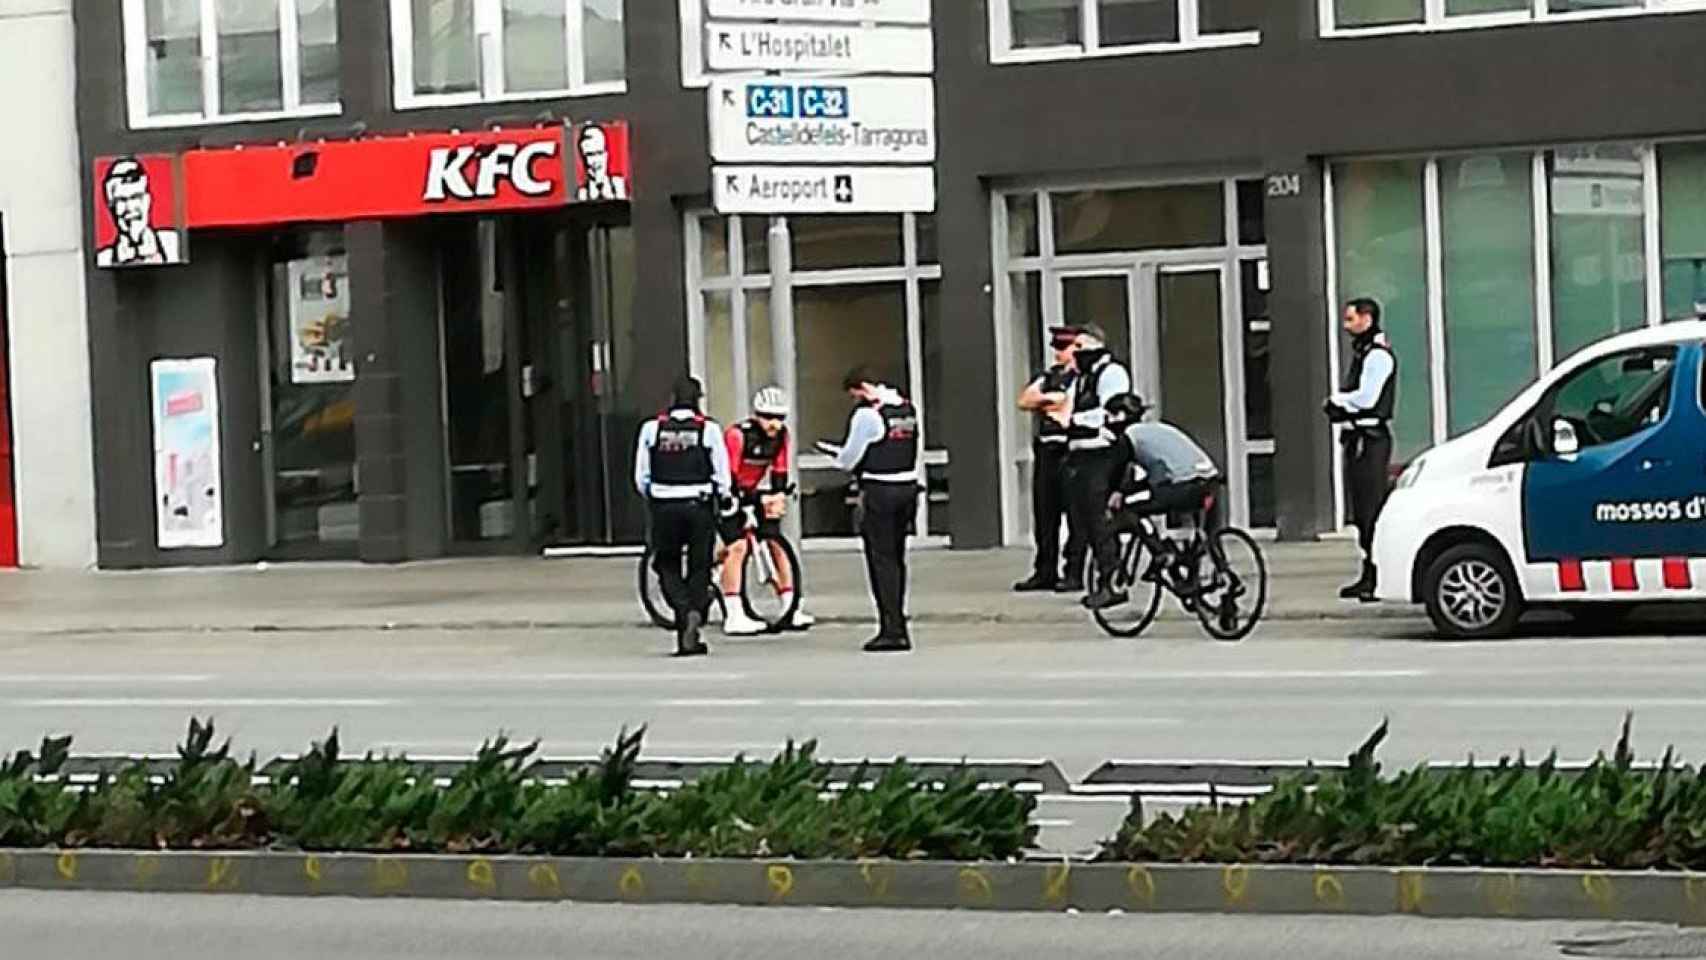 Imagen de agentes de los Mossos d'Esquadra levantando acta a dos ciclistas en pleno confinamiento / CG